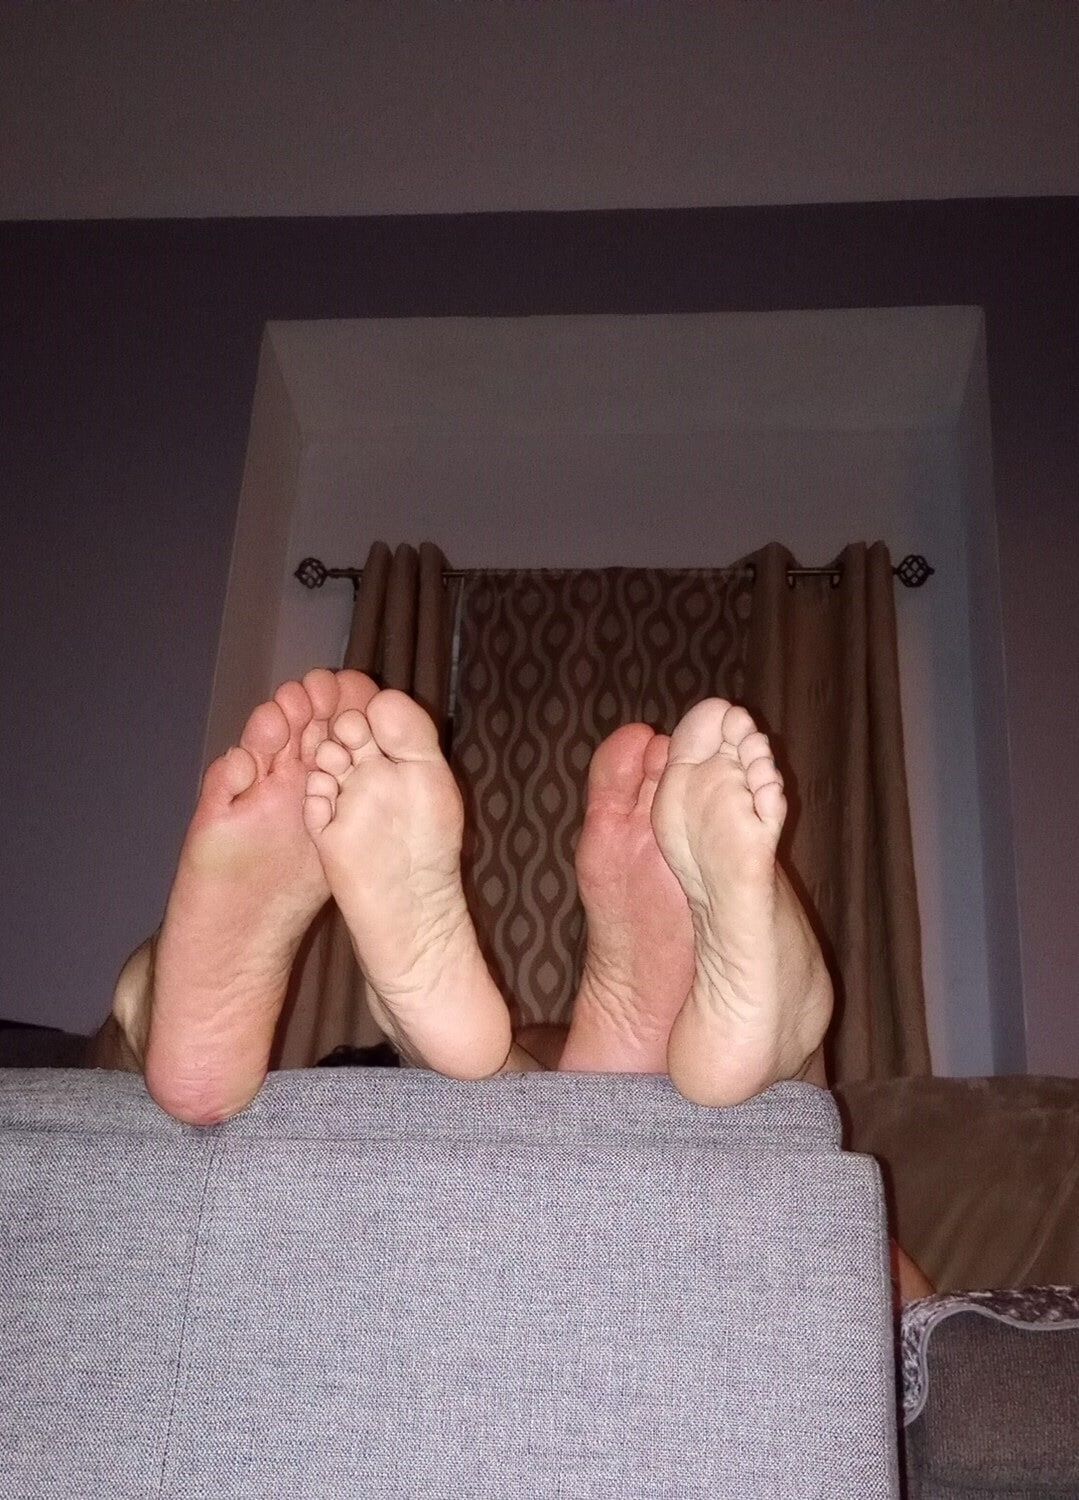 Do you like our feet together #13